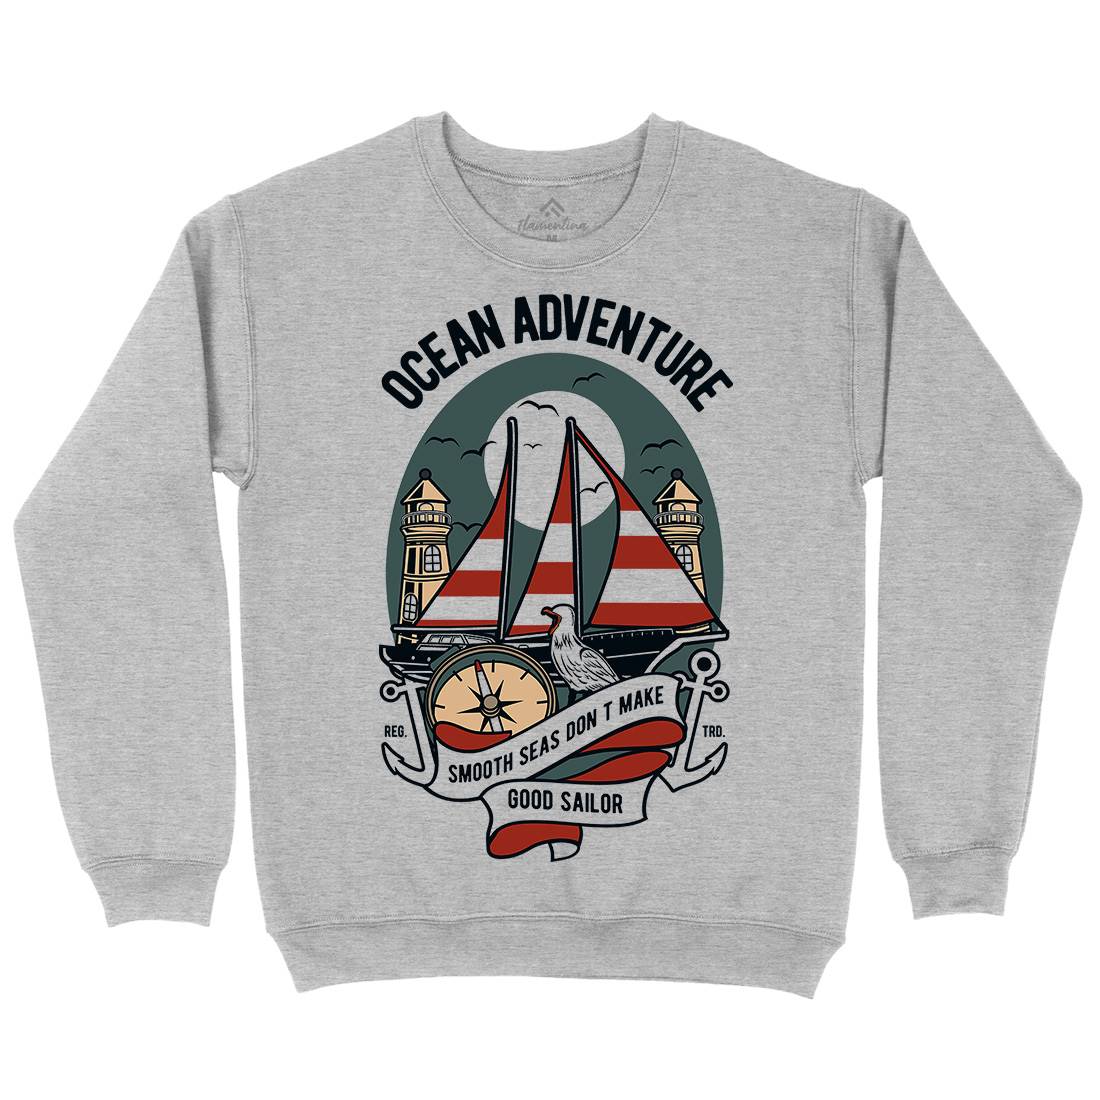 Ocean Adventure Kids Crew Neck Sweatshirt Navy D560